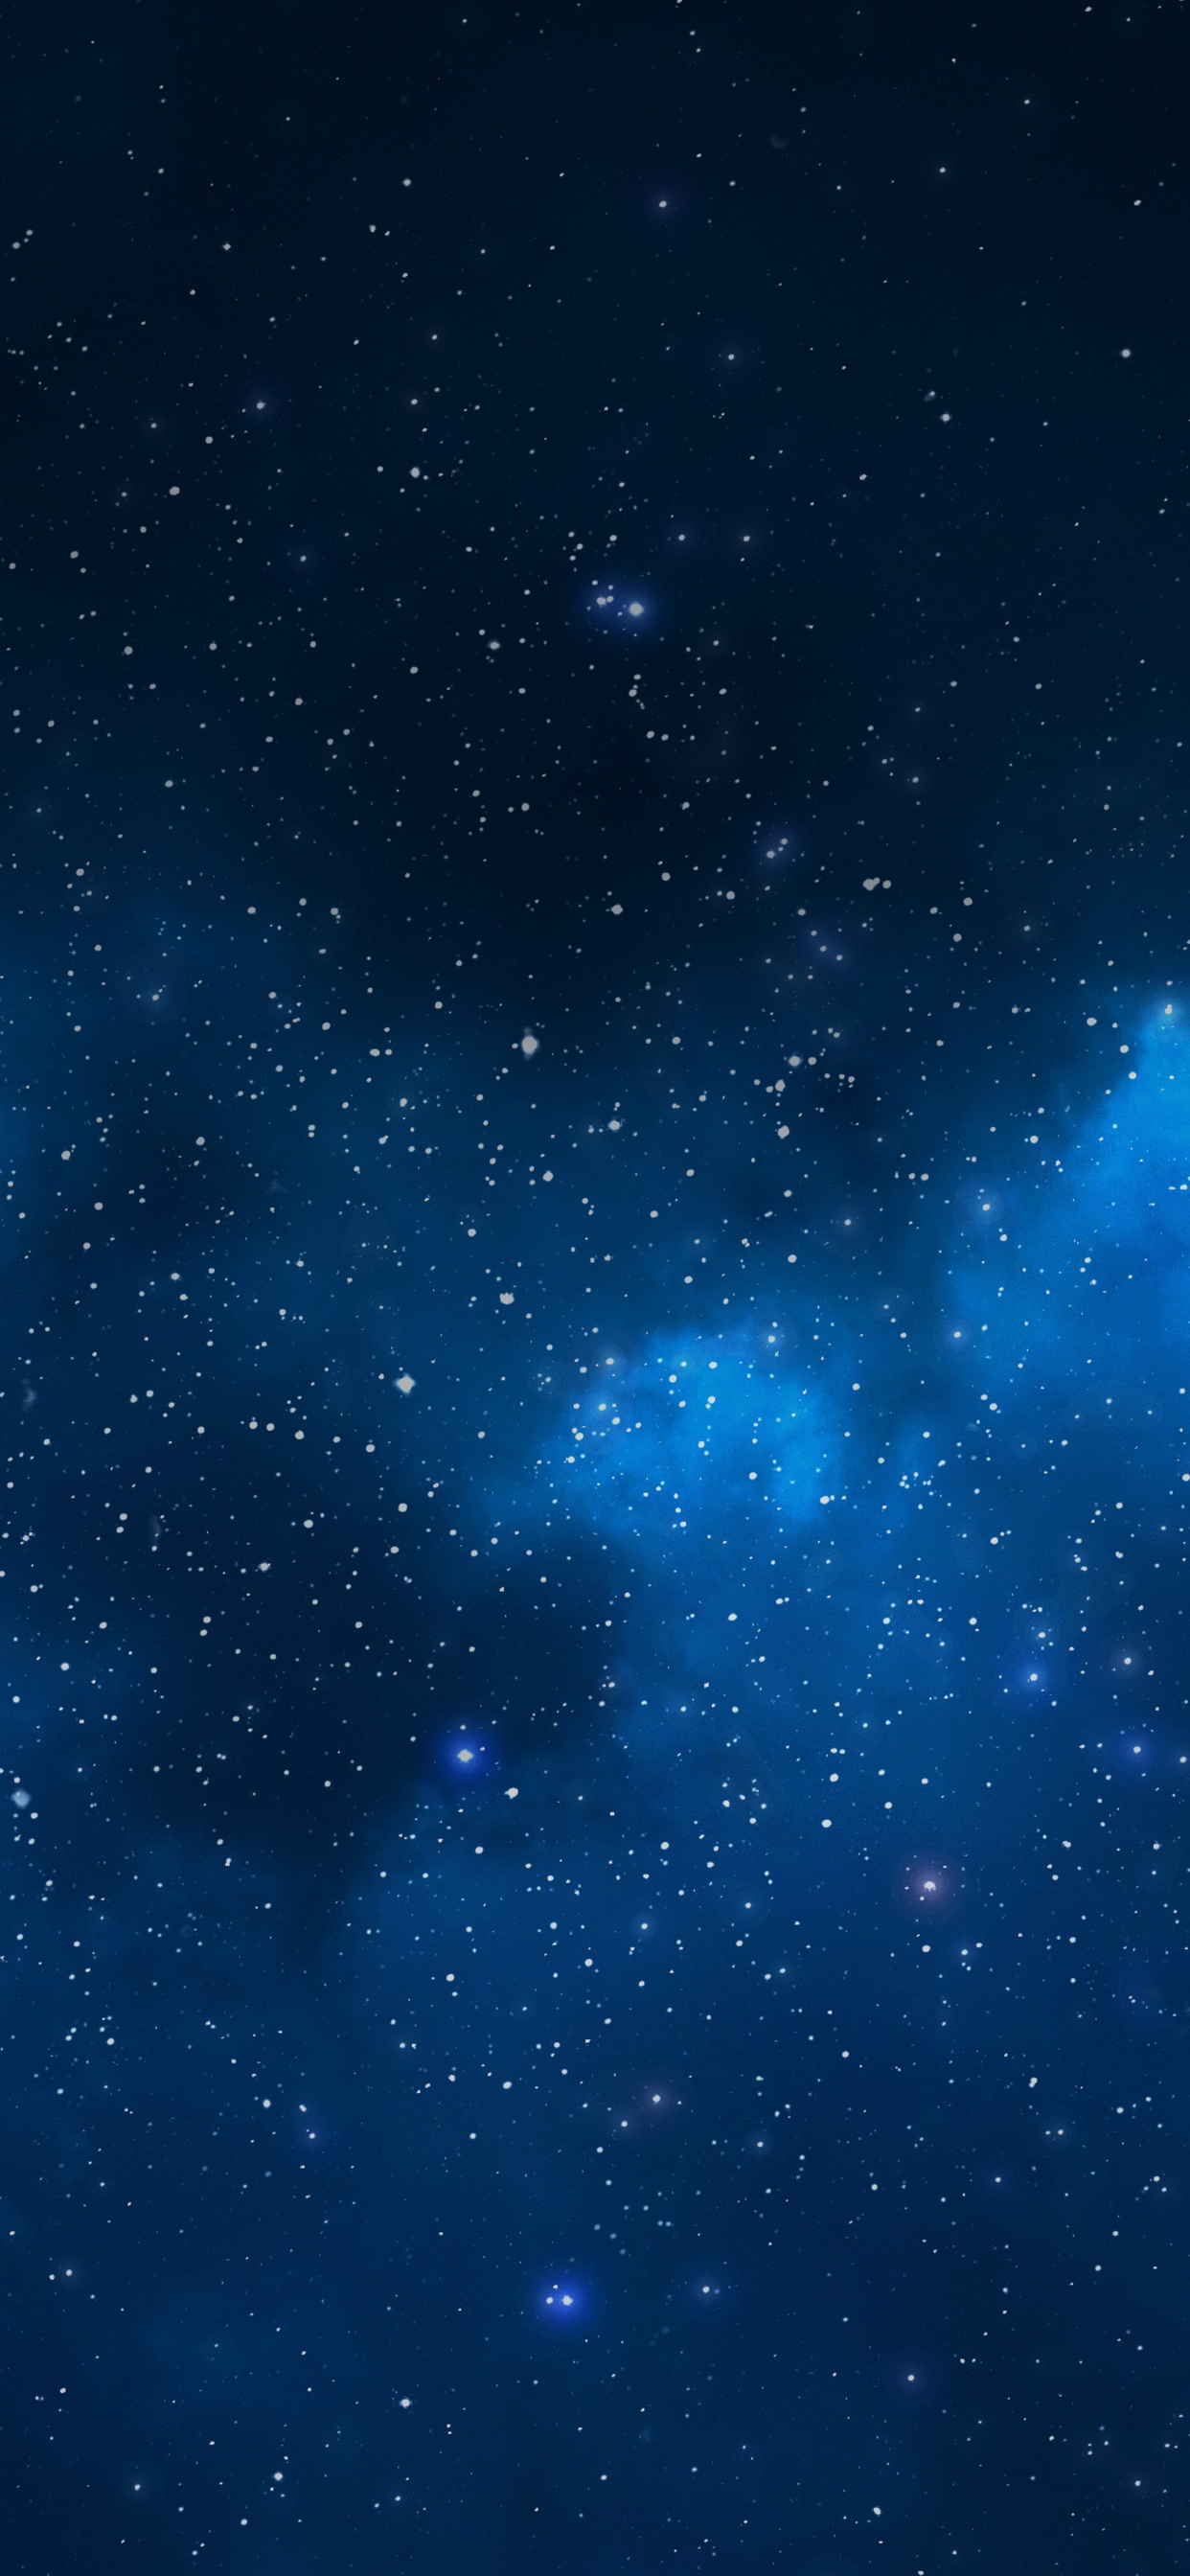 天文学对象, 外层空间, 空间, 夜晚的天空, 明星 壁纸 1242x2688 允许